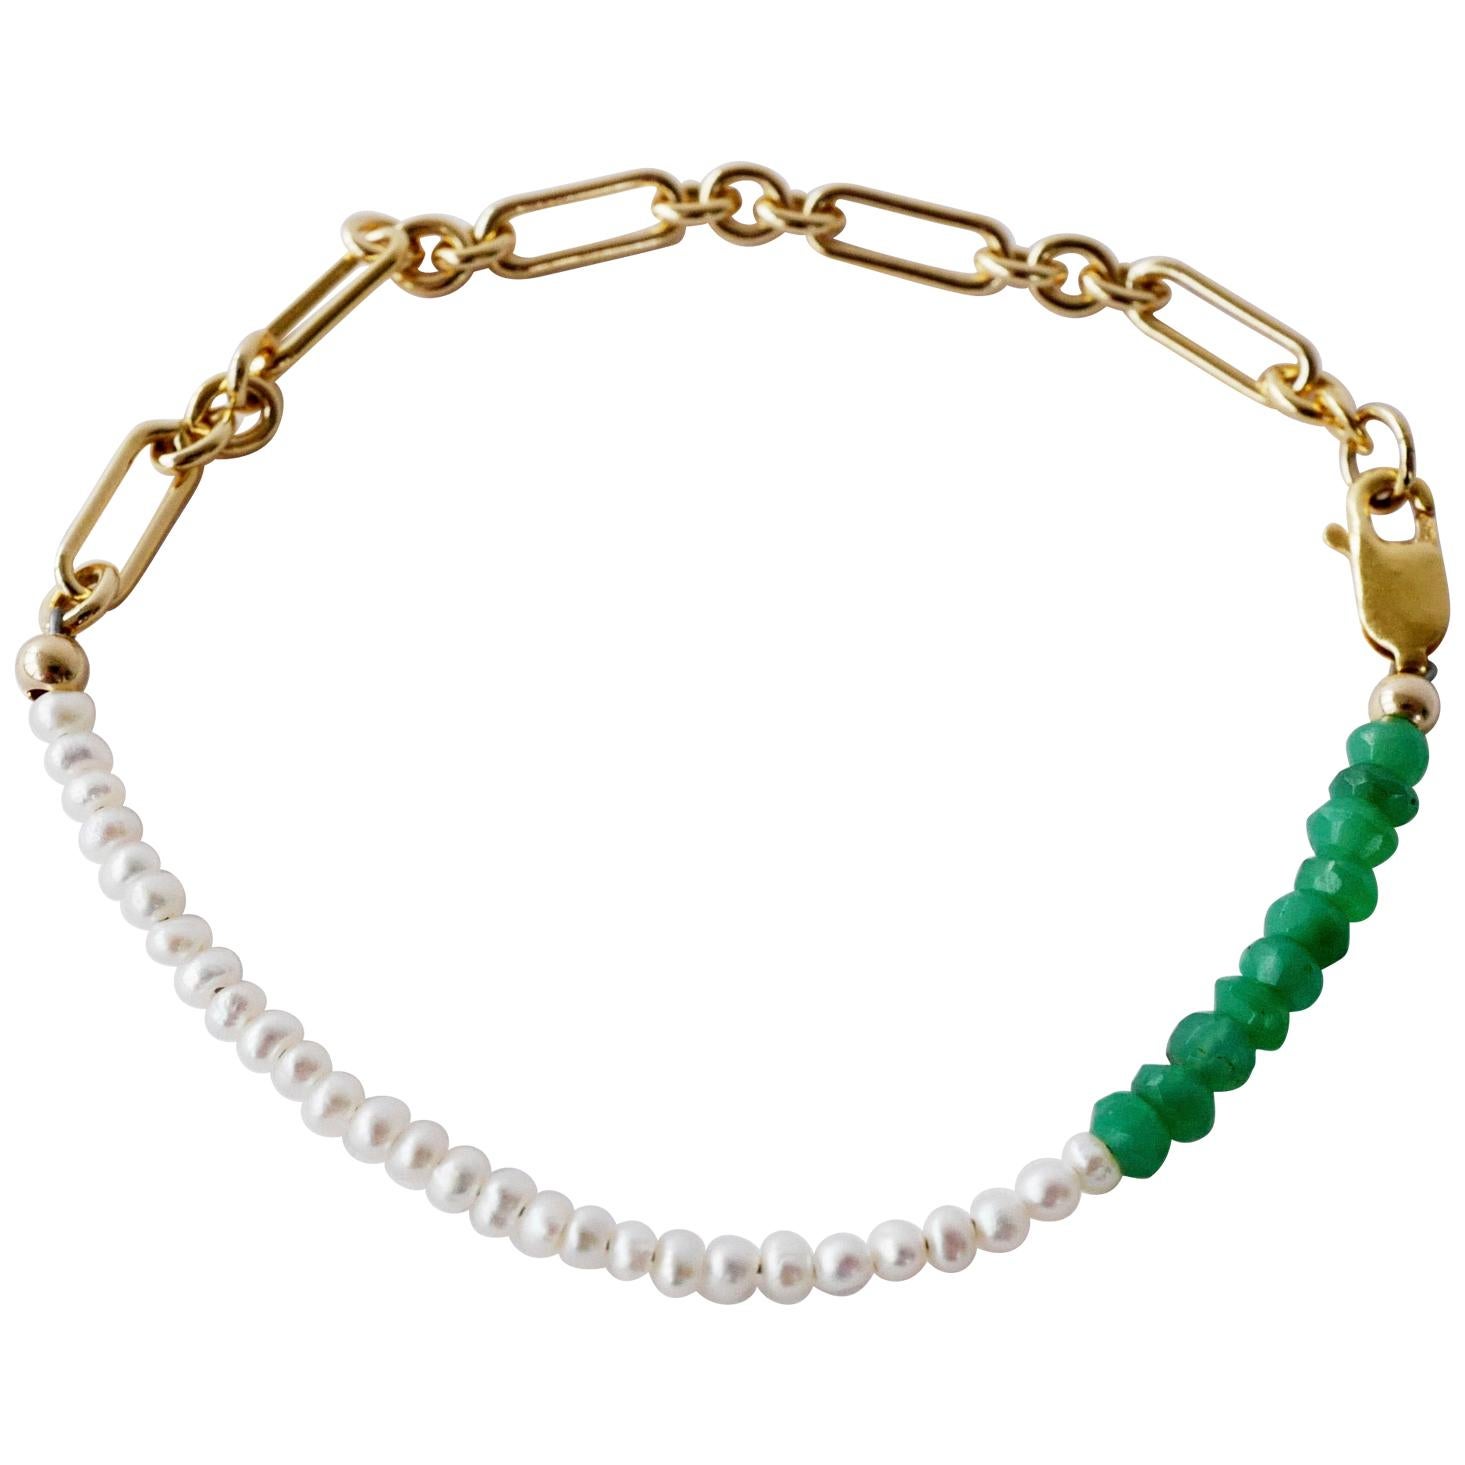 Weiß Weiße weiße Perlenkette Armband Grüner Chrysopras Gold gefüllt  J Dauphin